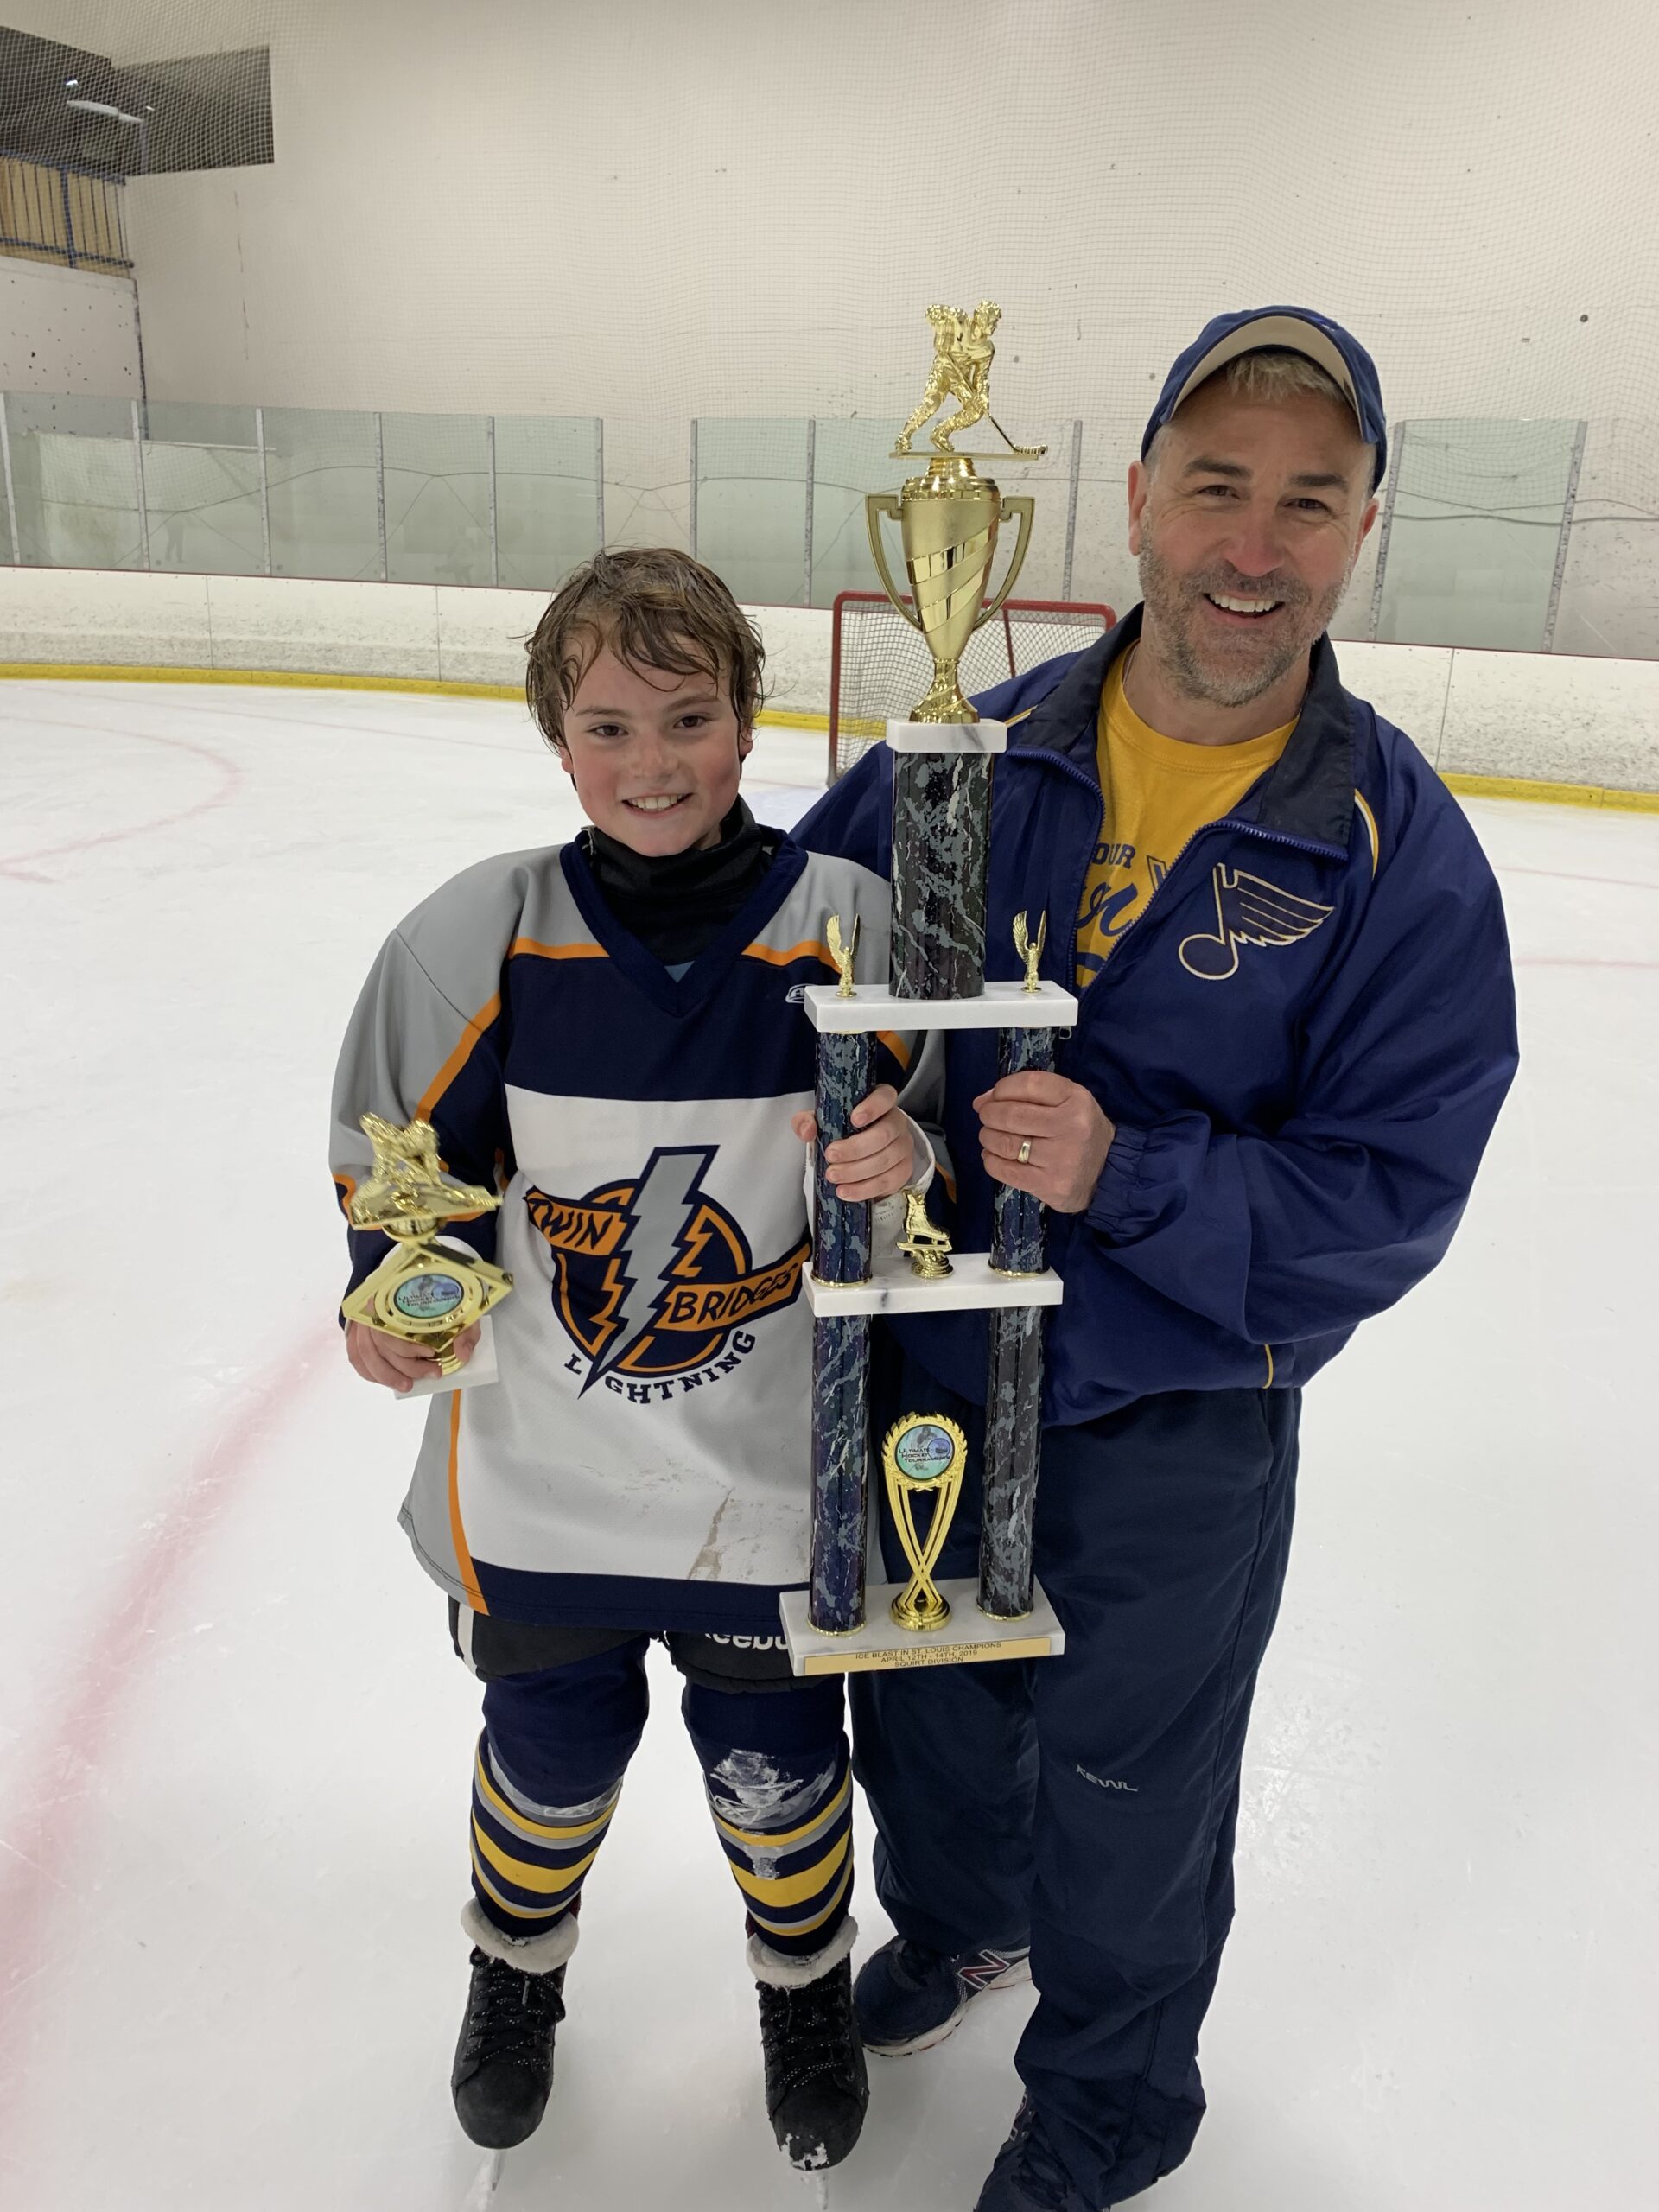 Me & Emmitt Holding Championship Trophy (Hockey)